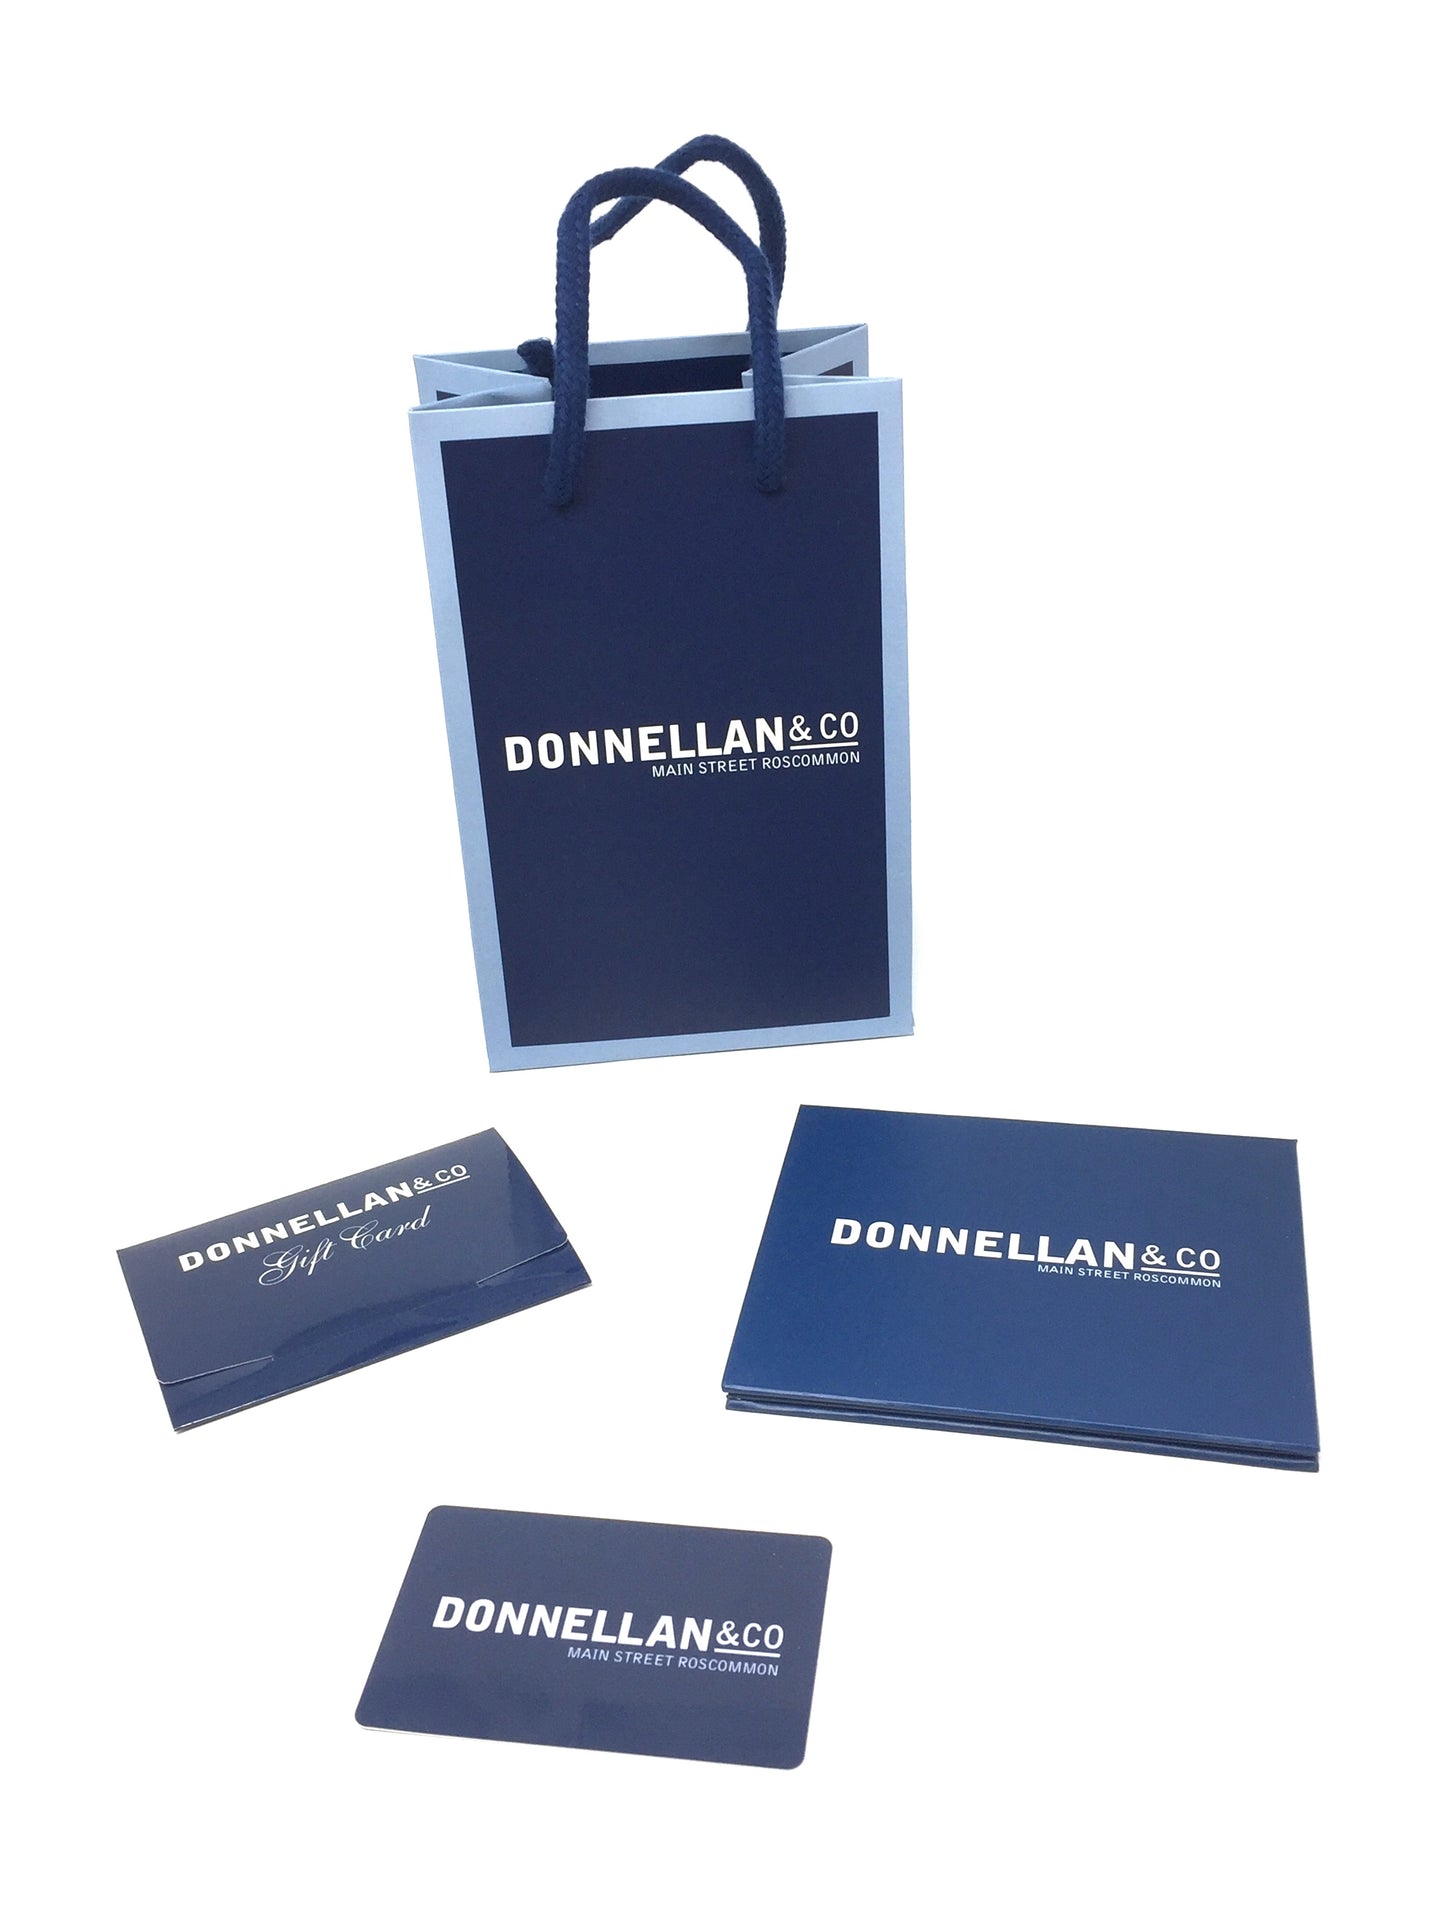 Donnellan & Co Gift voucher roscommon